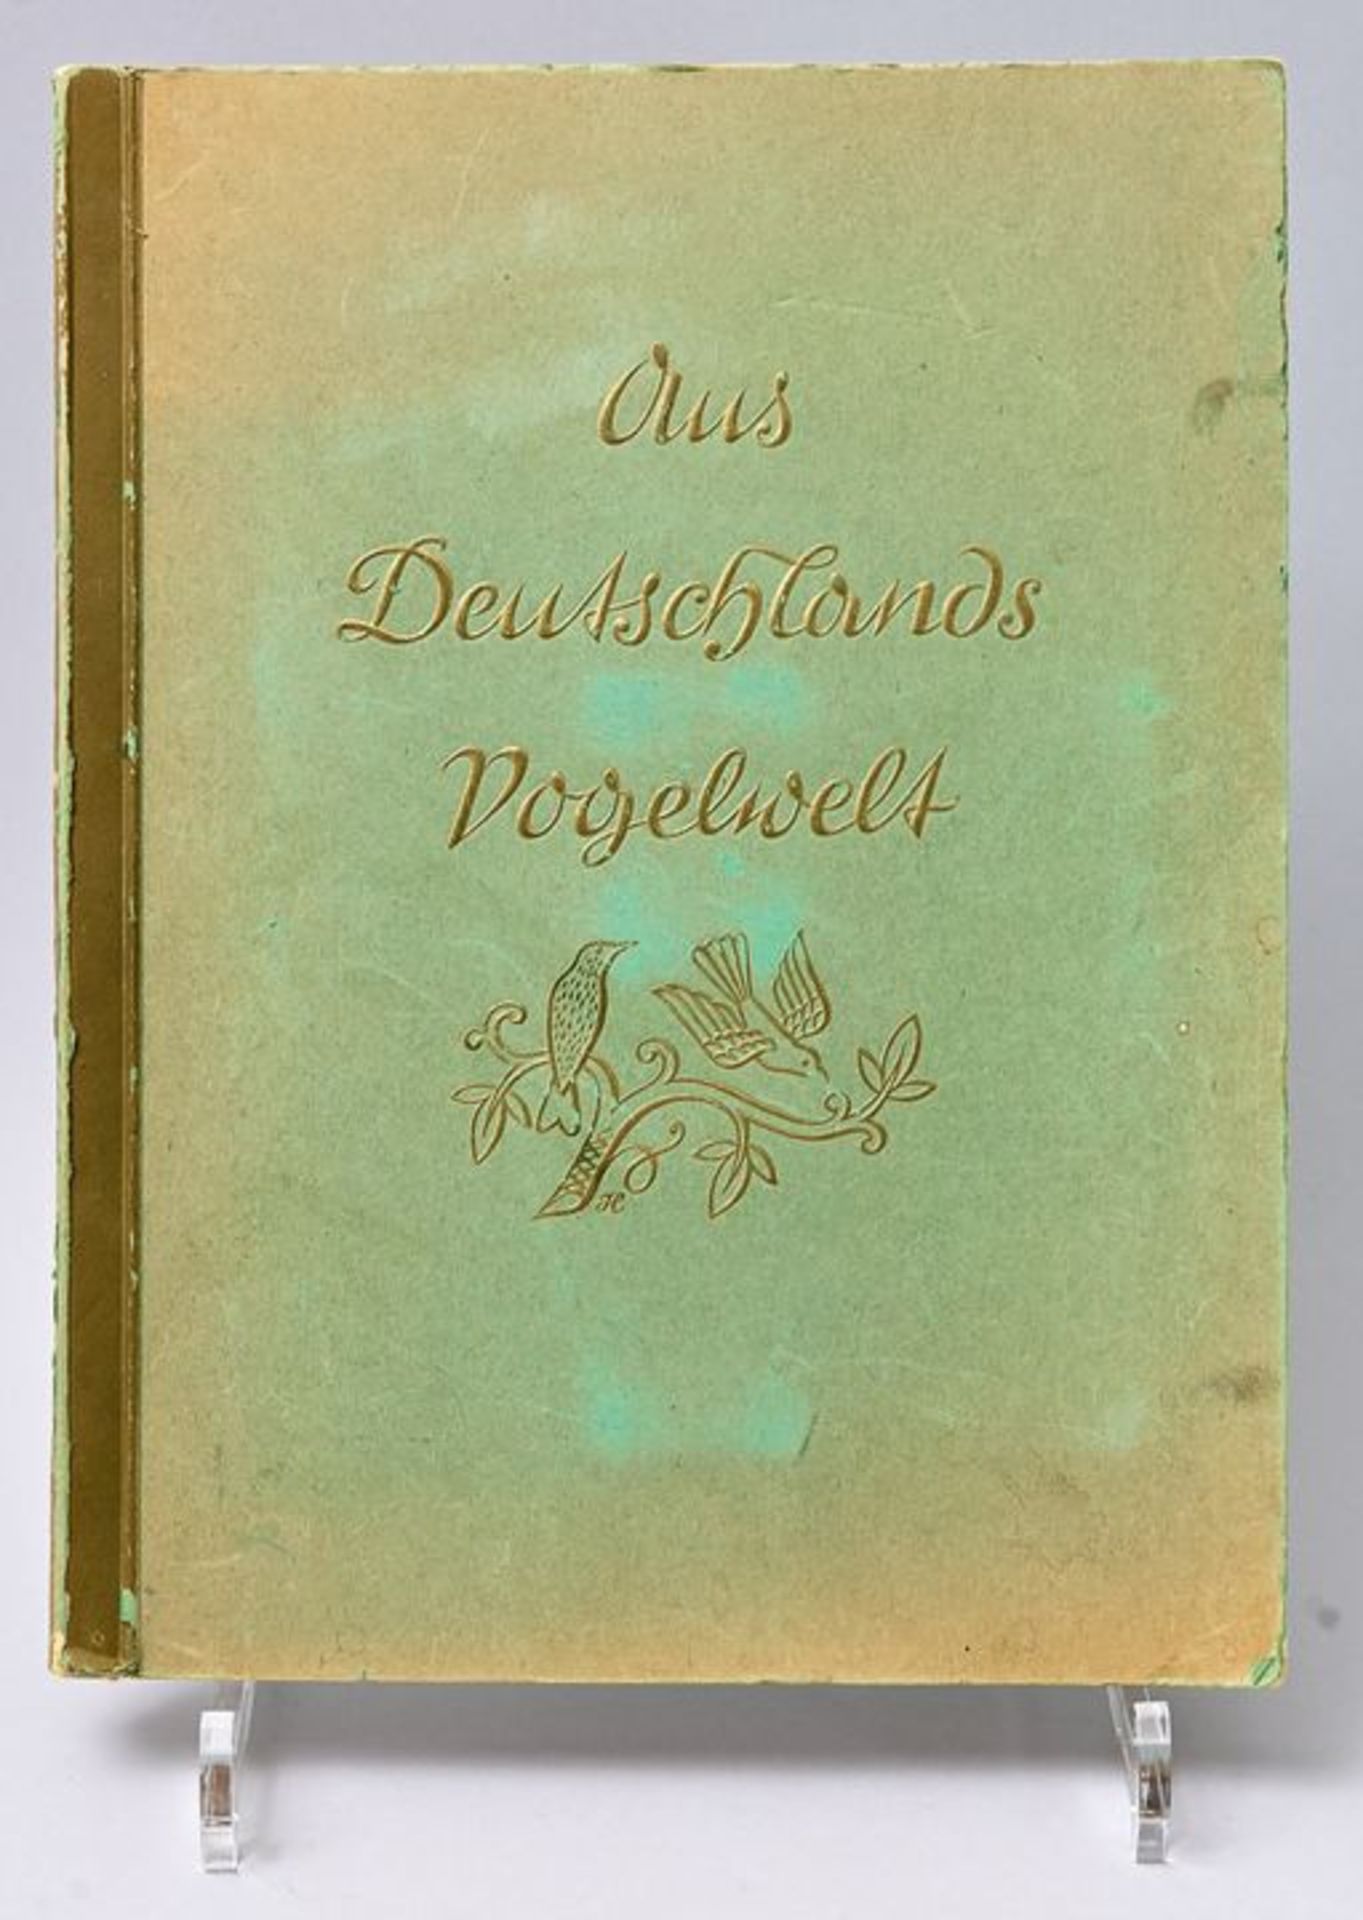 Buch "Aus Deutschlands Vogelwelt" / Book